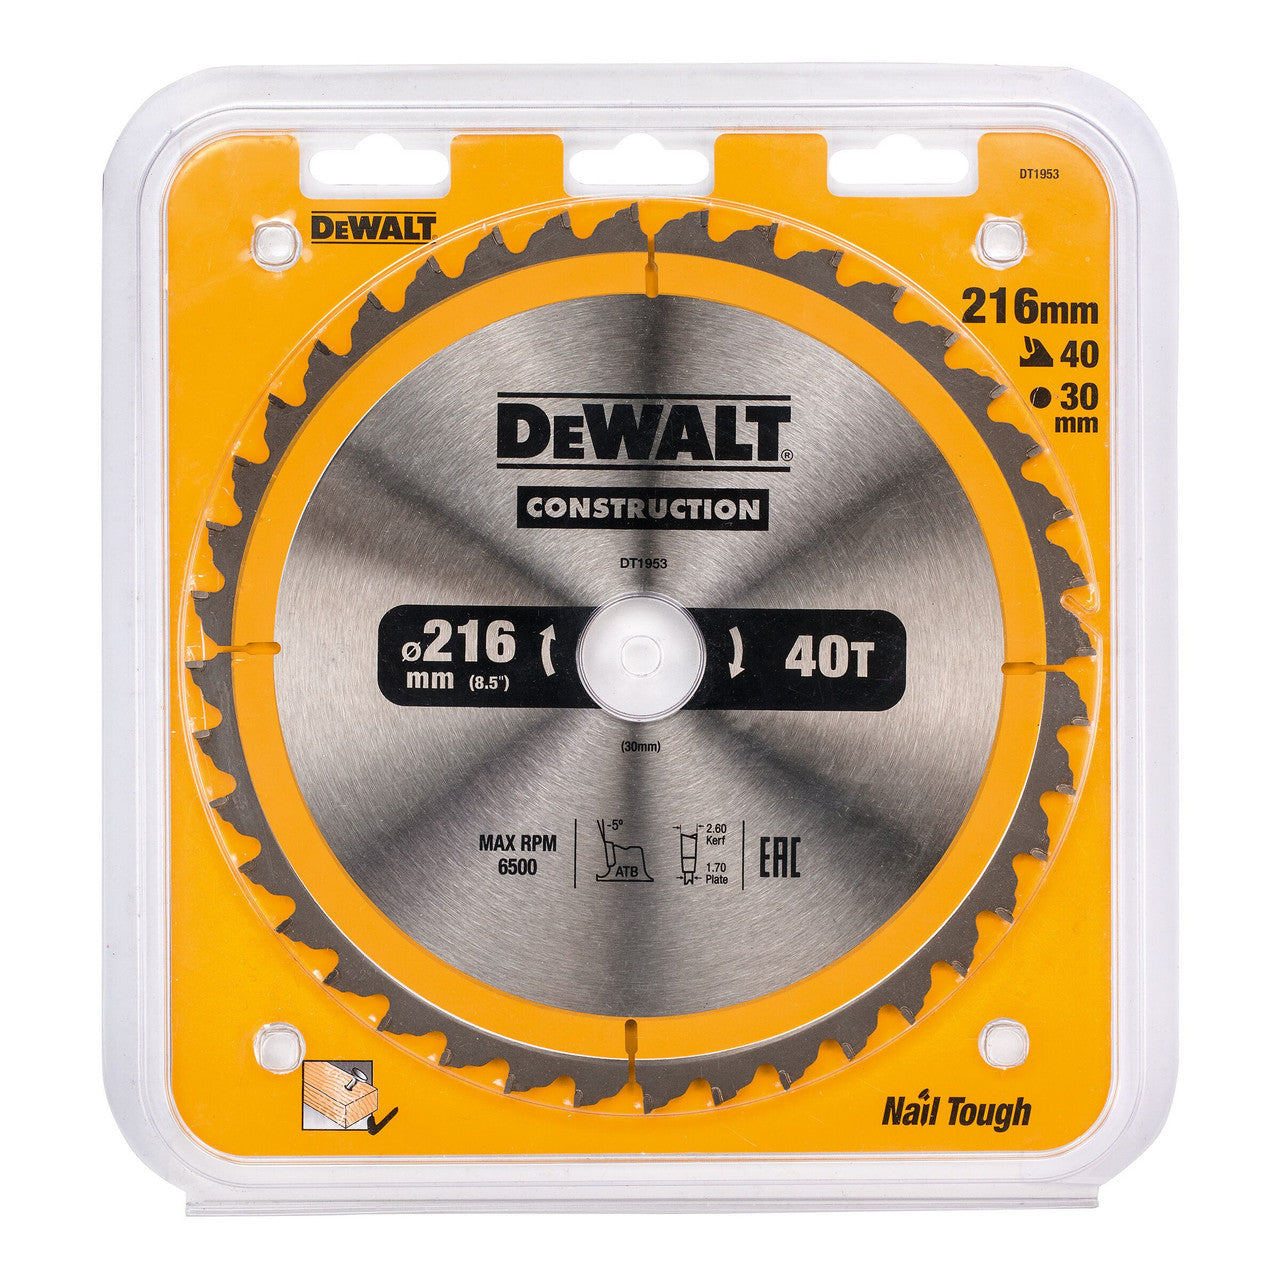 Dewalt DT1953 Construction Circular Saw Blade 216 x 30mm x 40T